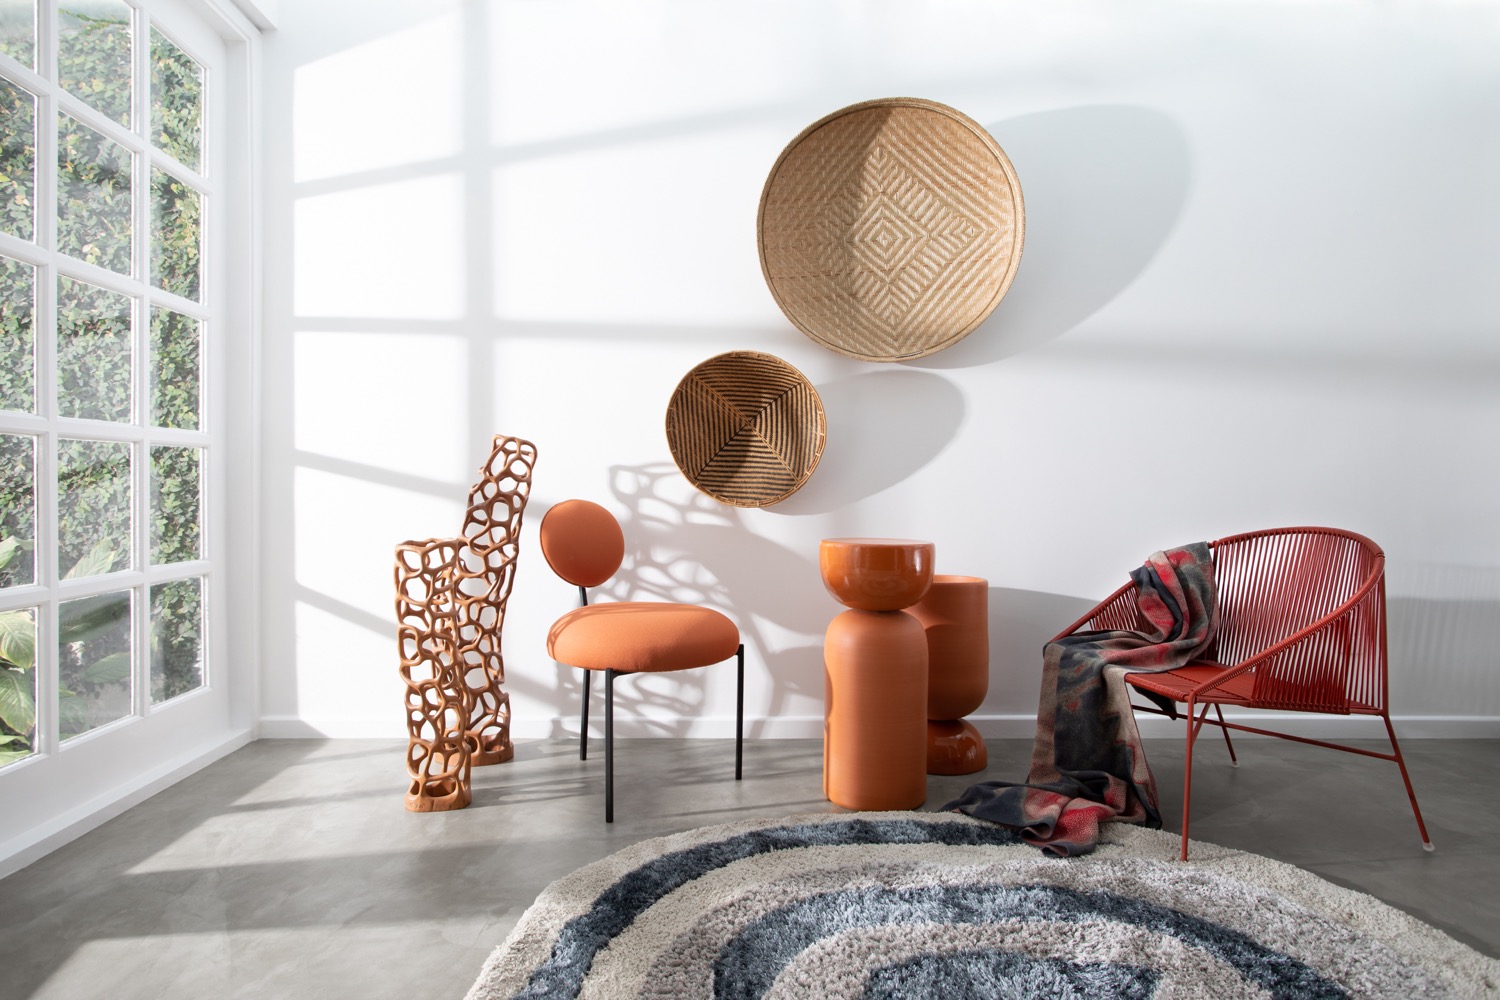 Sala com tapete circular, duas cadeiras arredondadas e cestas penduradas nas paredes